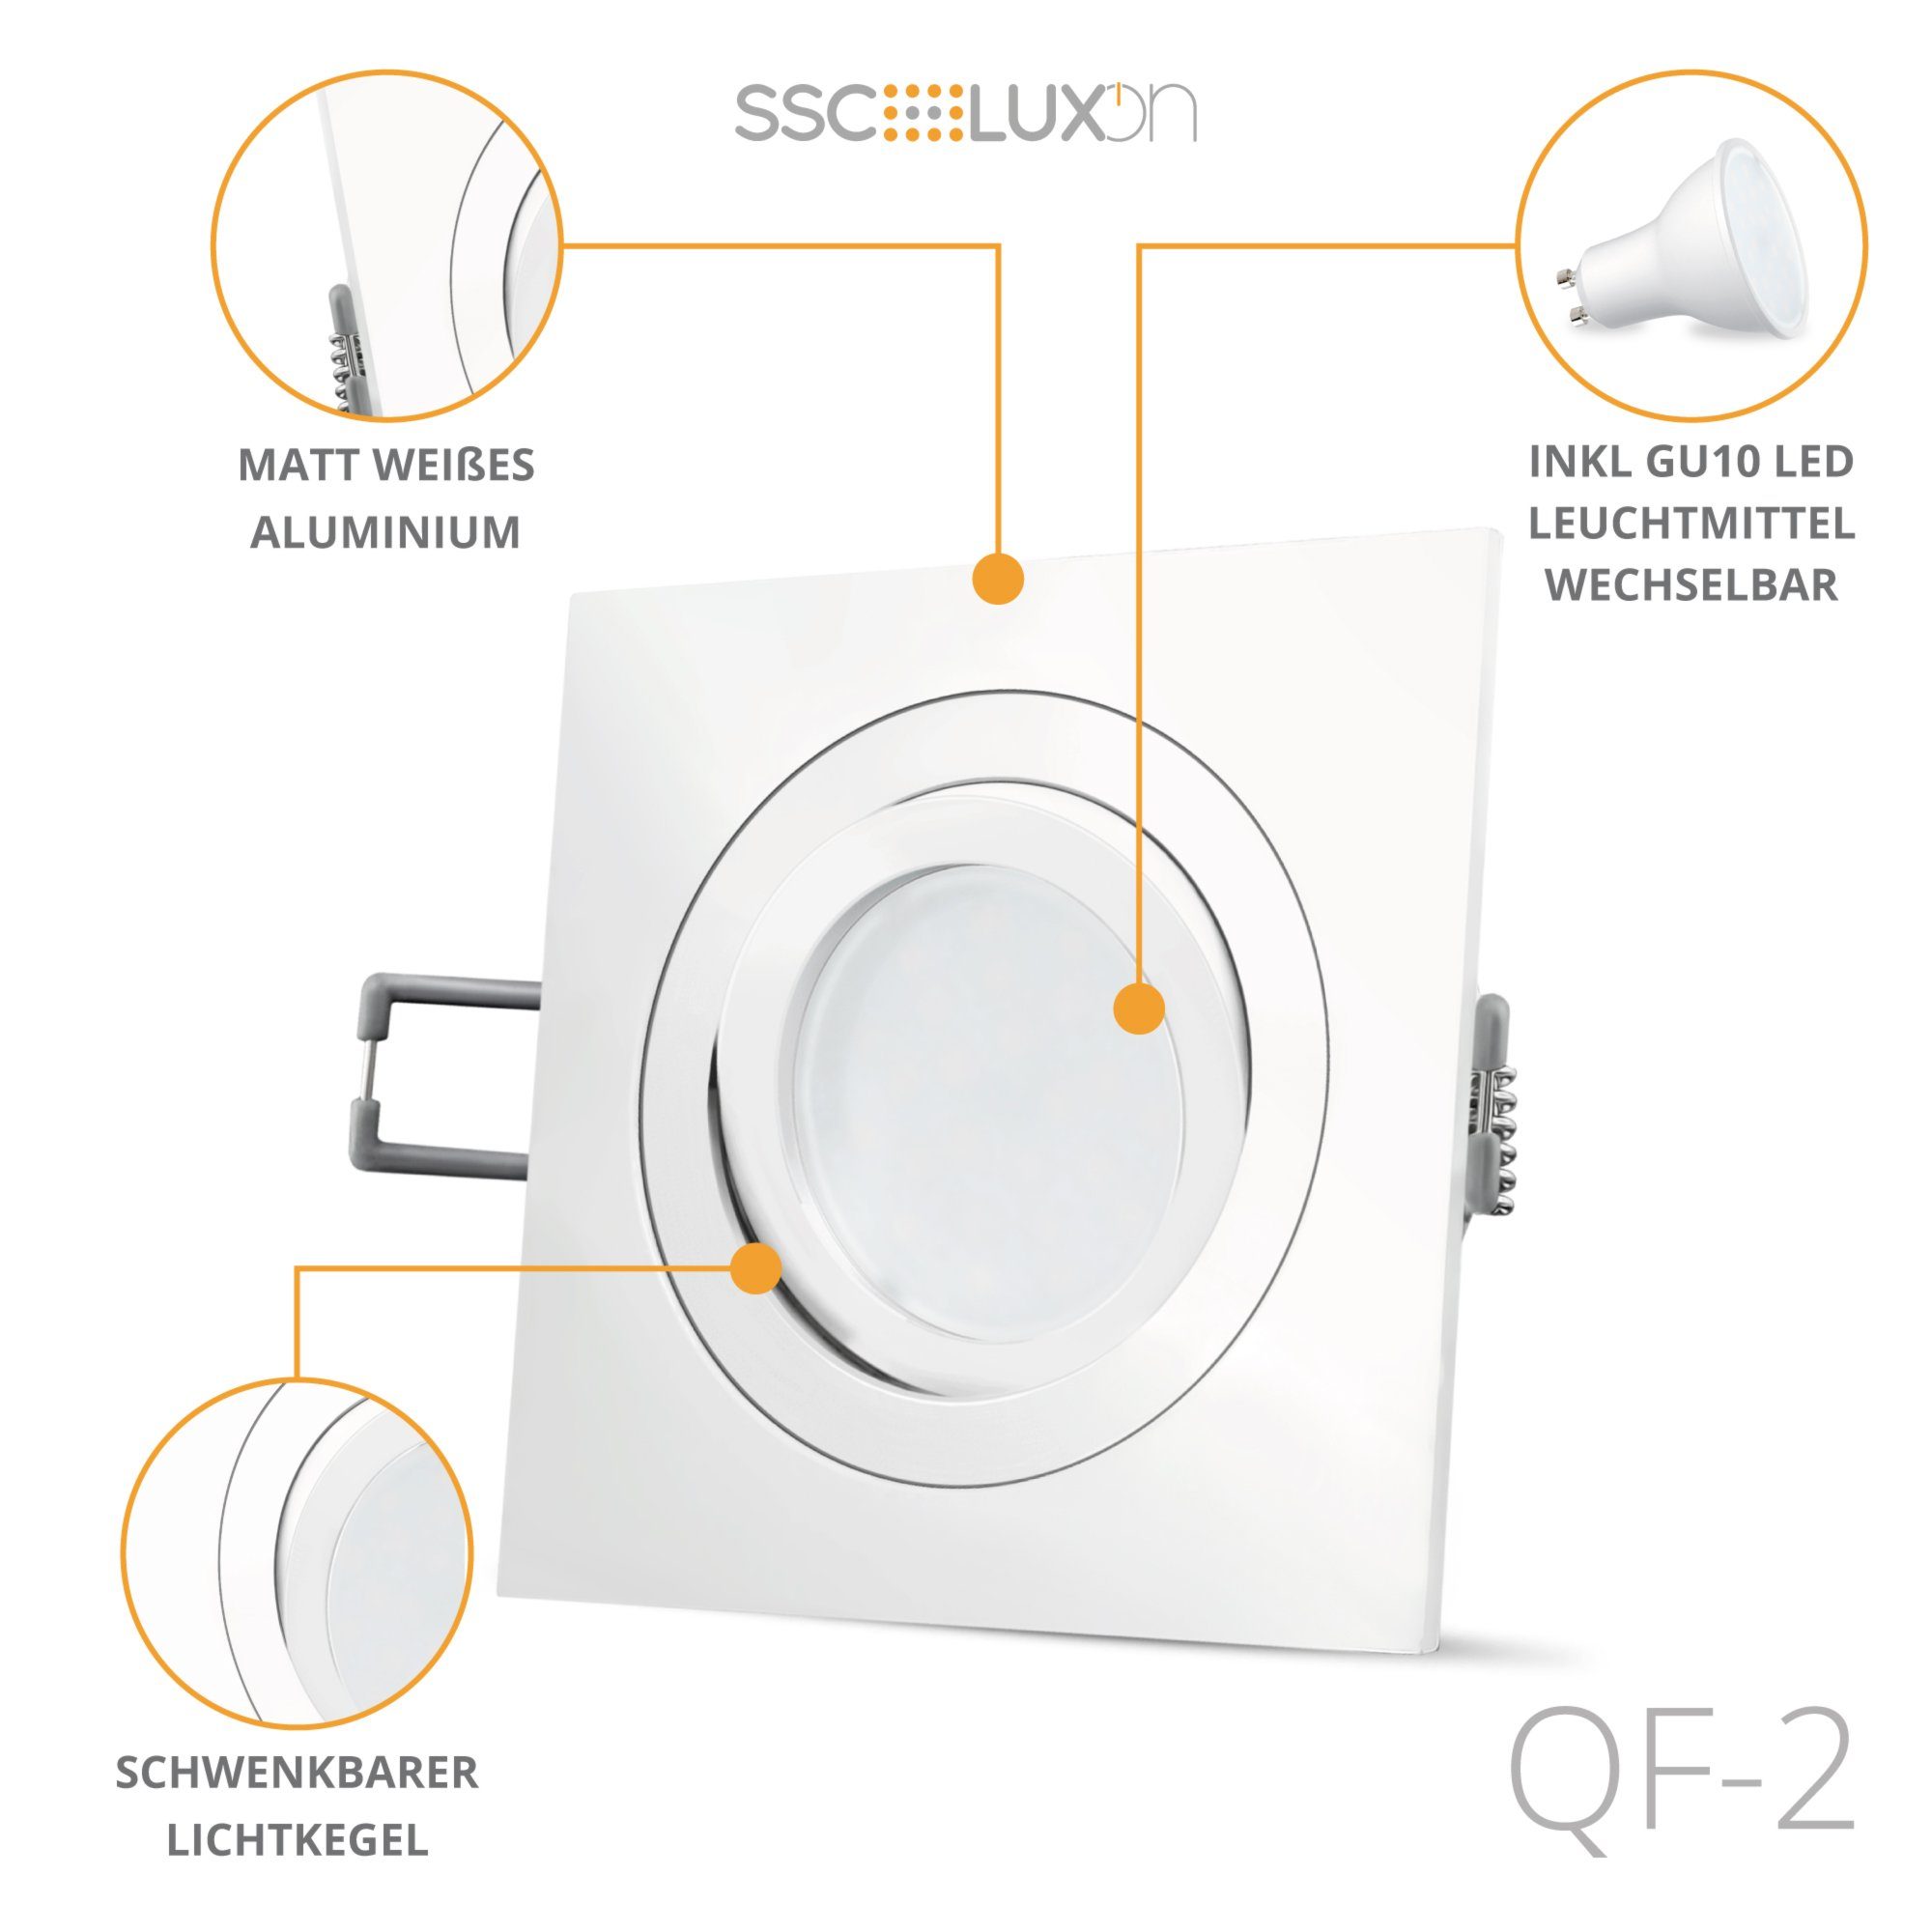 SSC-LUXon LED QF-2 Einbaustrahler weiss mit Einbaustrahler LED Einbauleuchte GU10, Neutralweiß schwenkbar LED